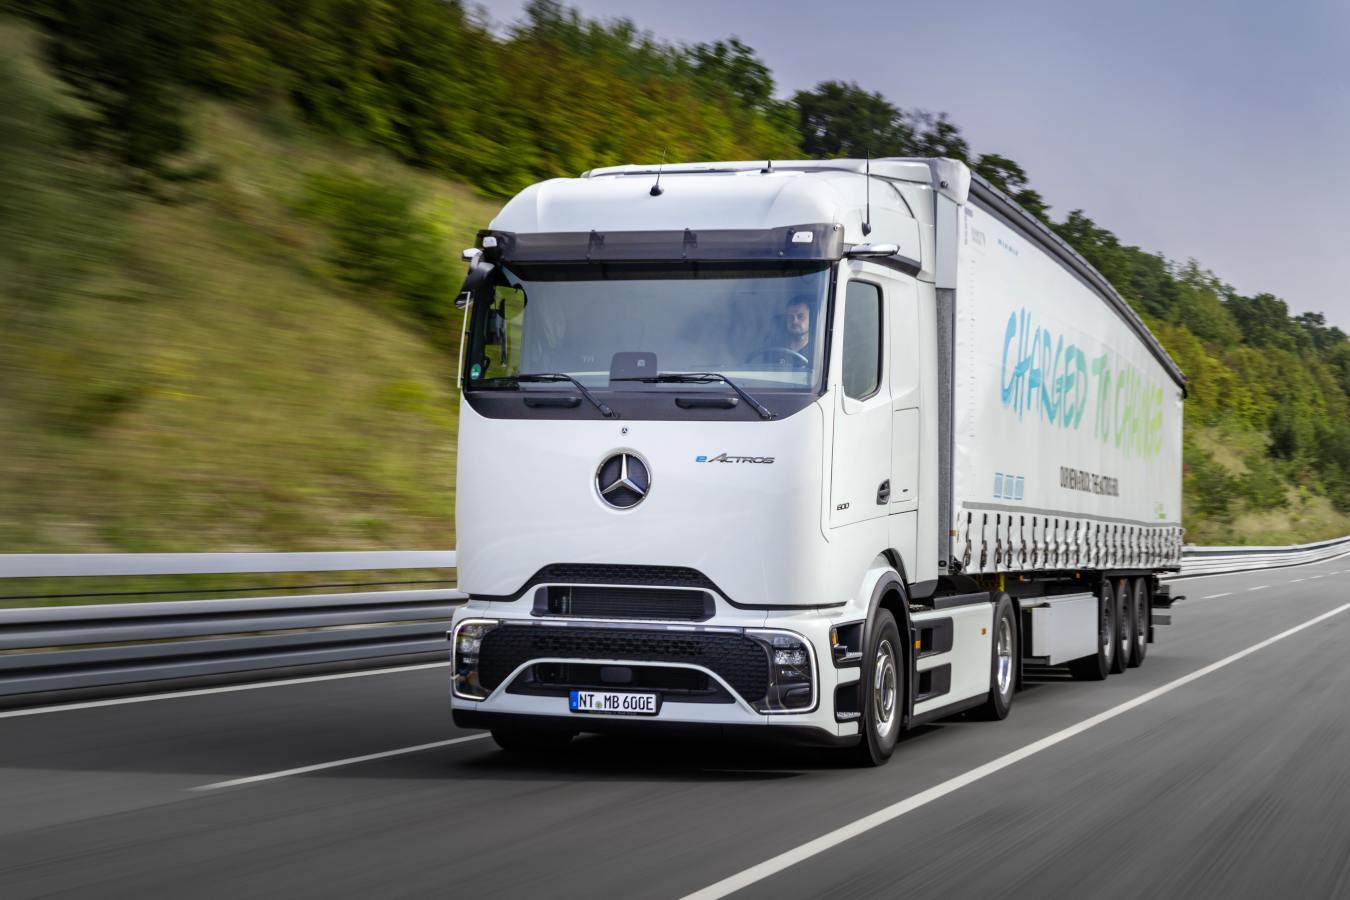 Mercedes-Benz Trucks schickt eActros 600 auf größte Erprobungsfahrt der Unternehmensgeschichte